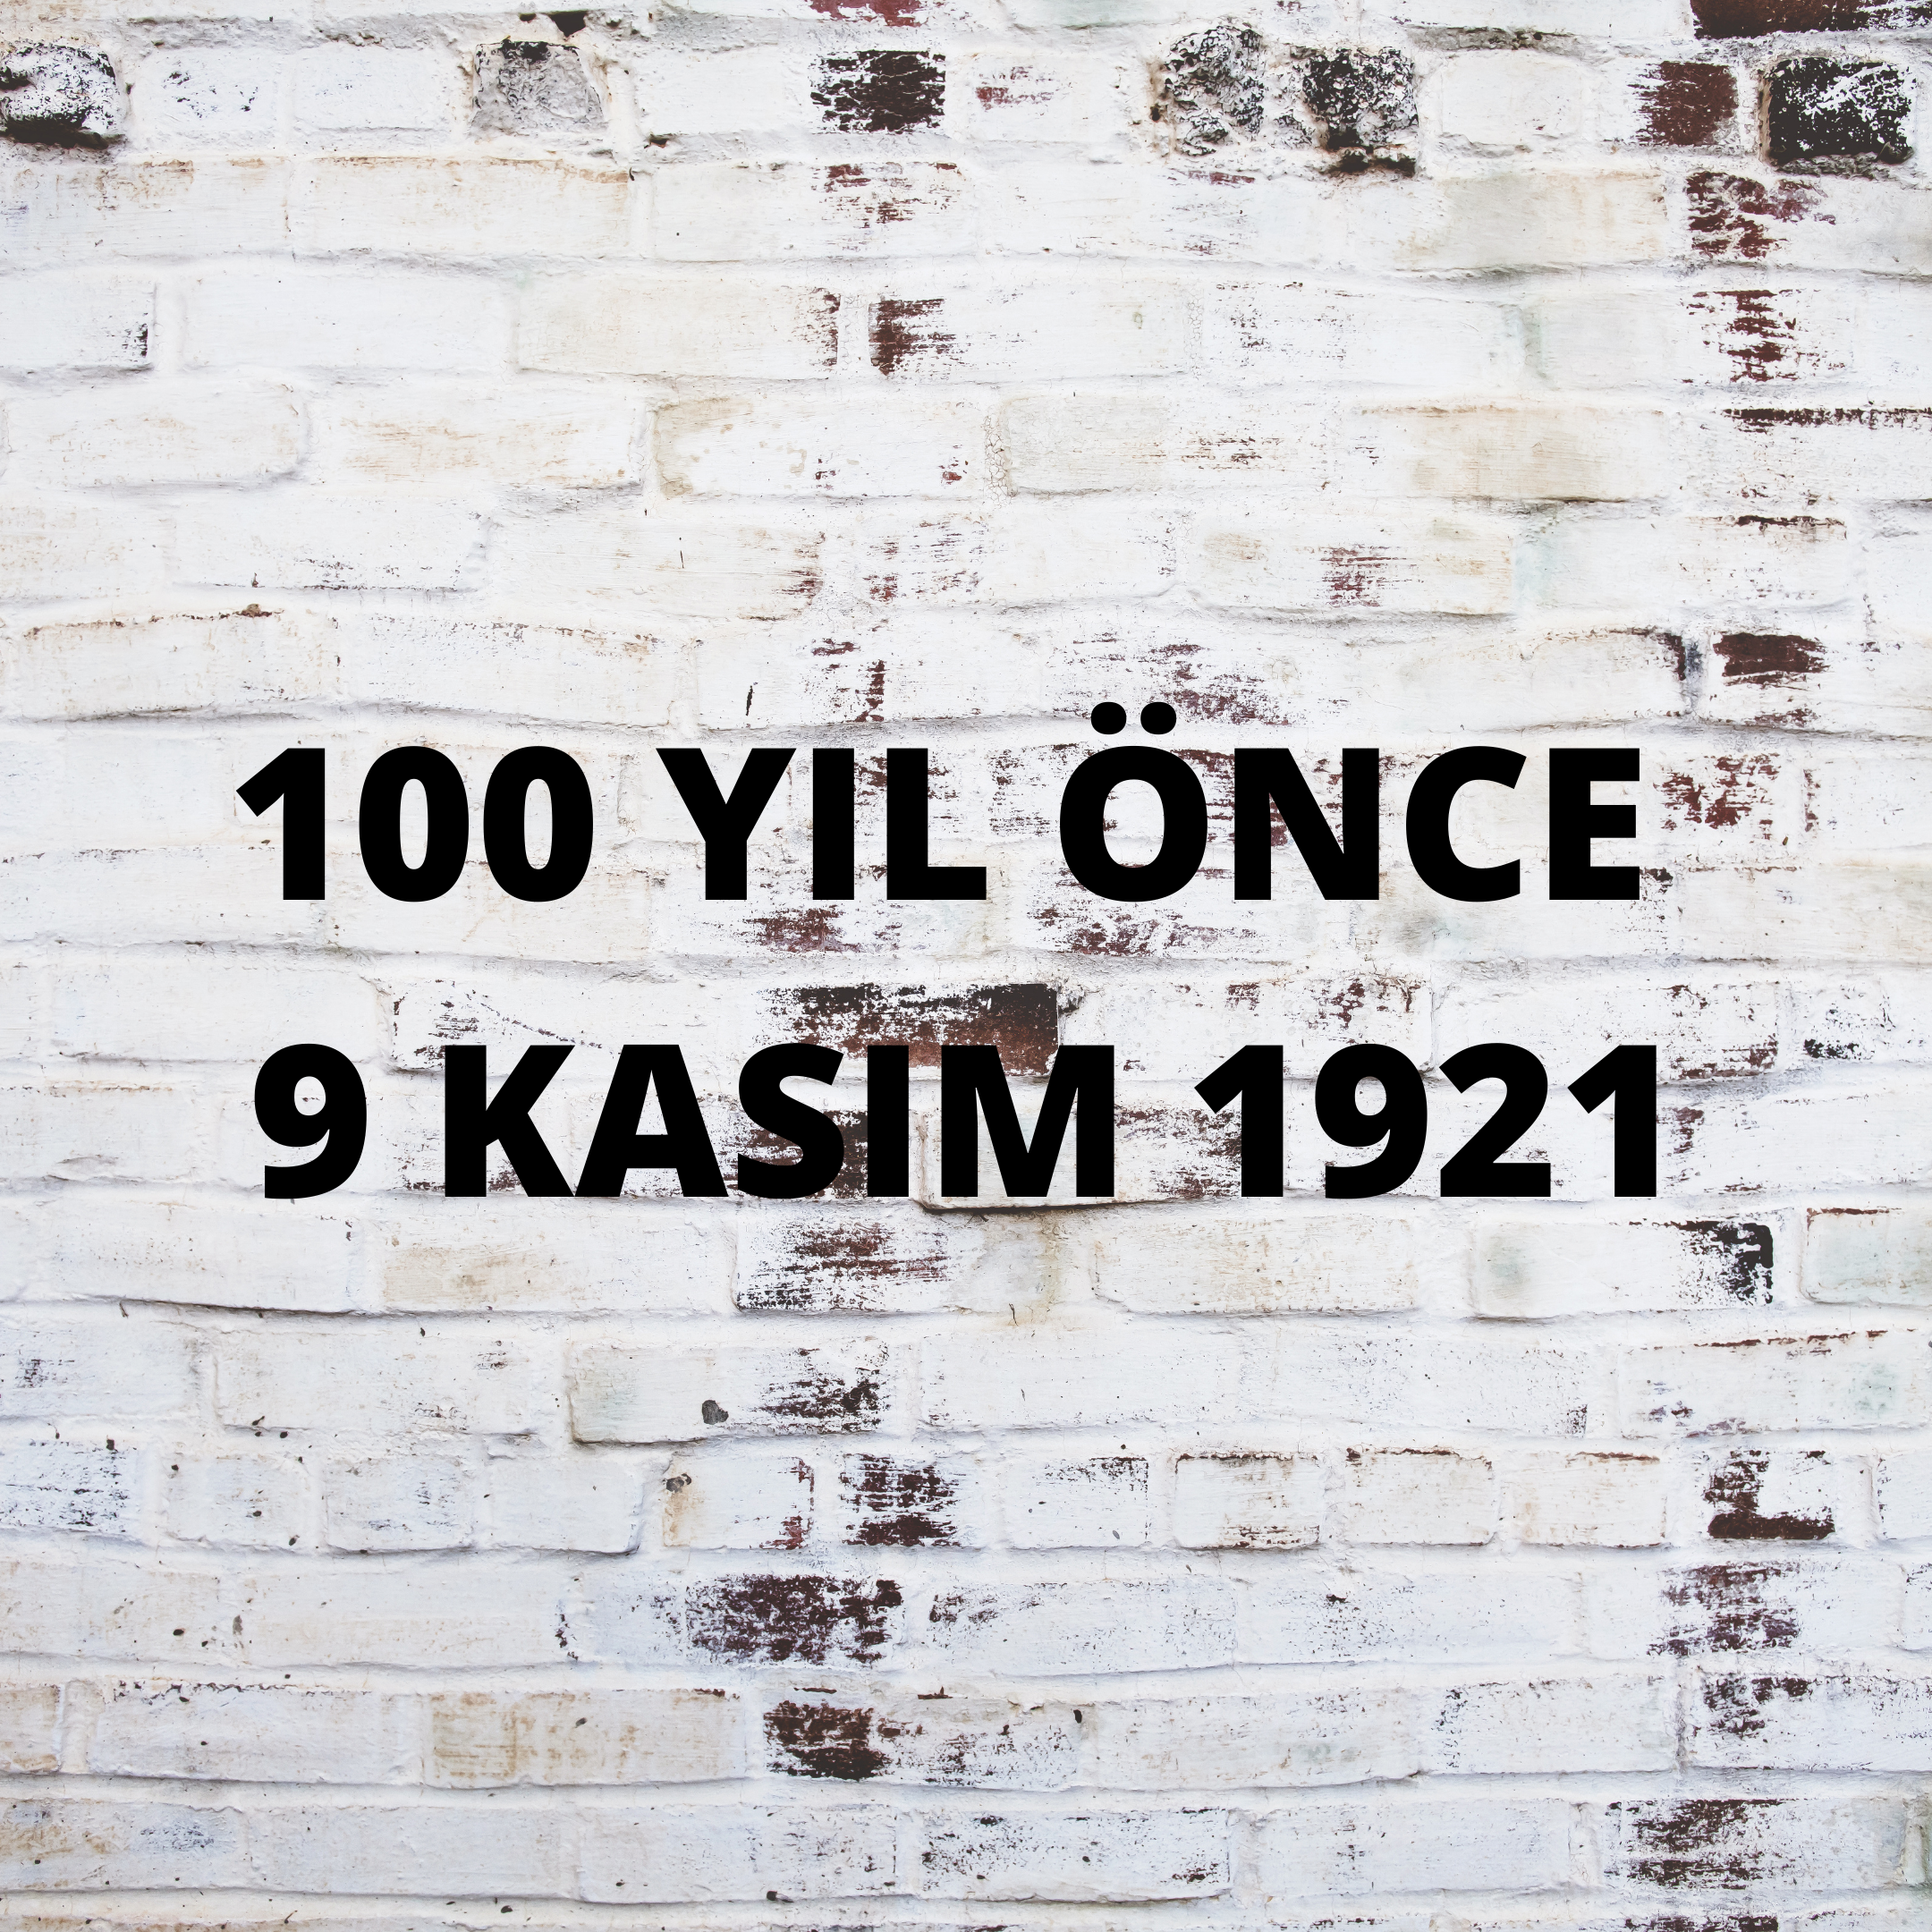 100 YIL ÖNCE 9 KASIM 1921